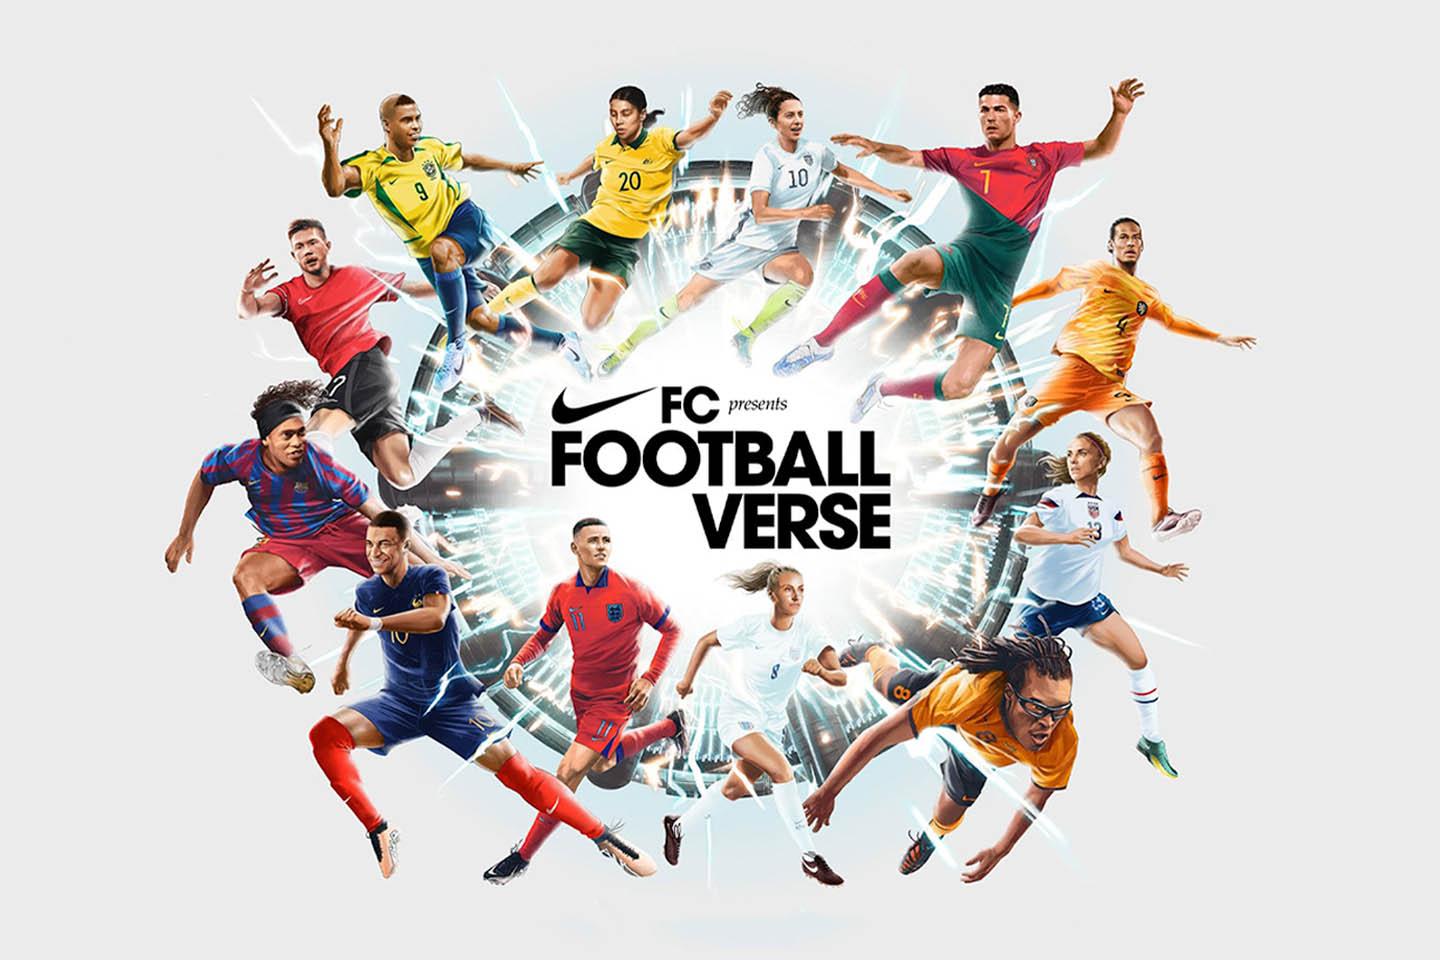 Nike-Footballverse-ads-SPACEBAR-Main